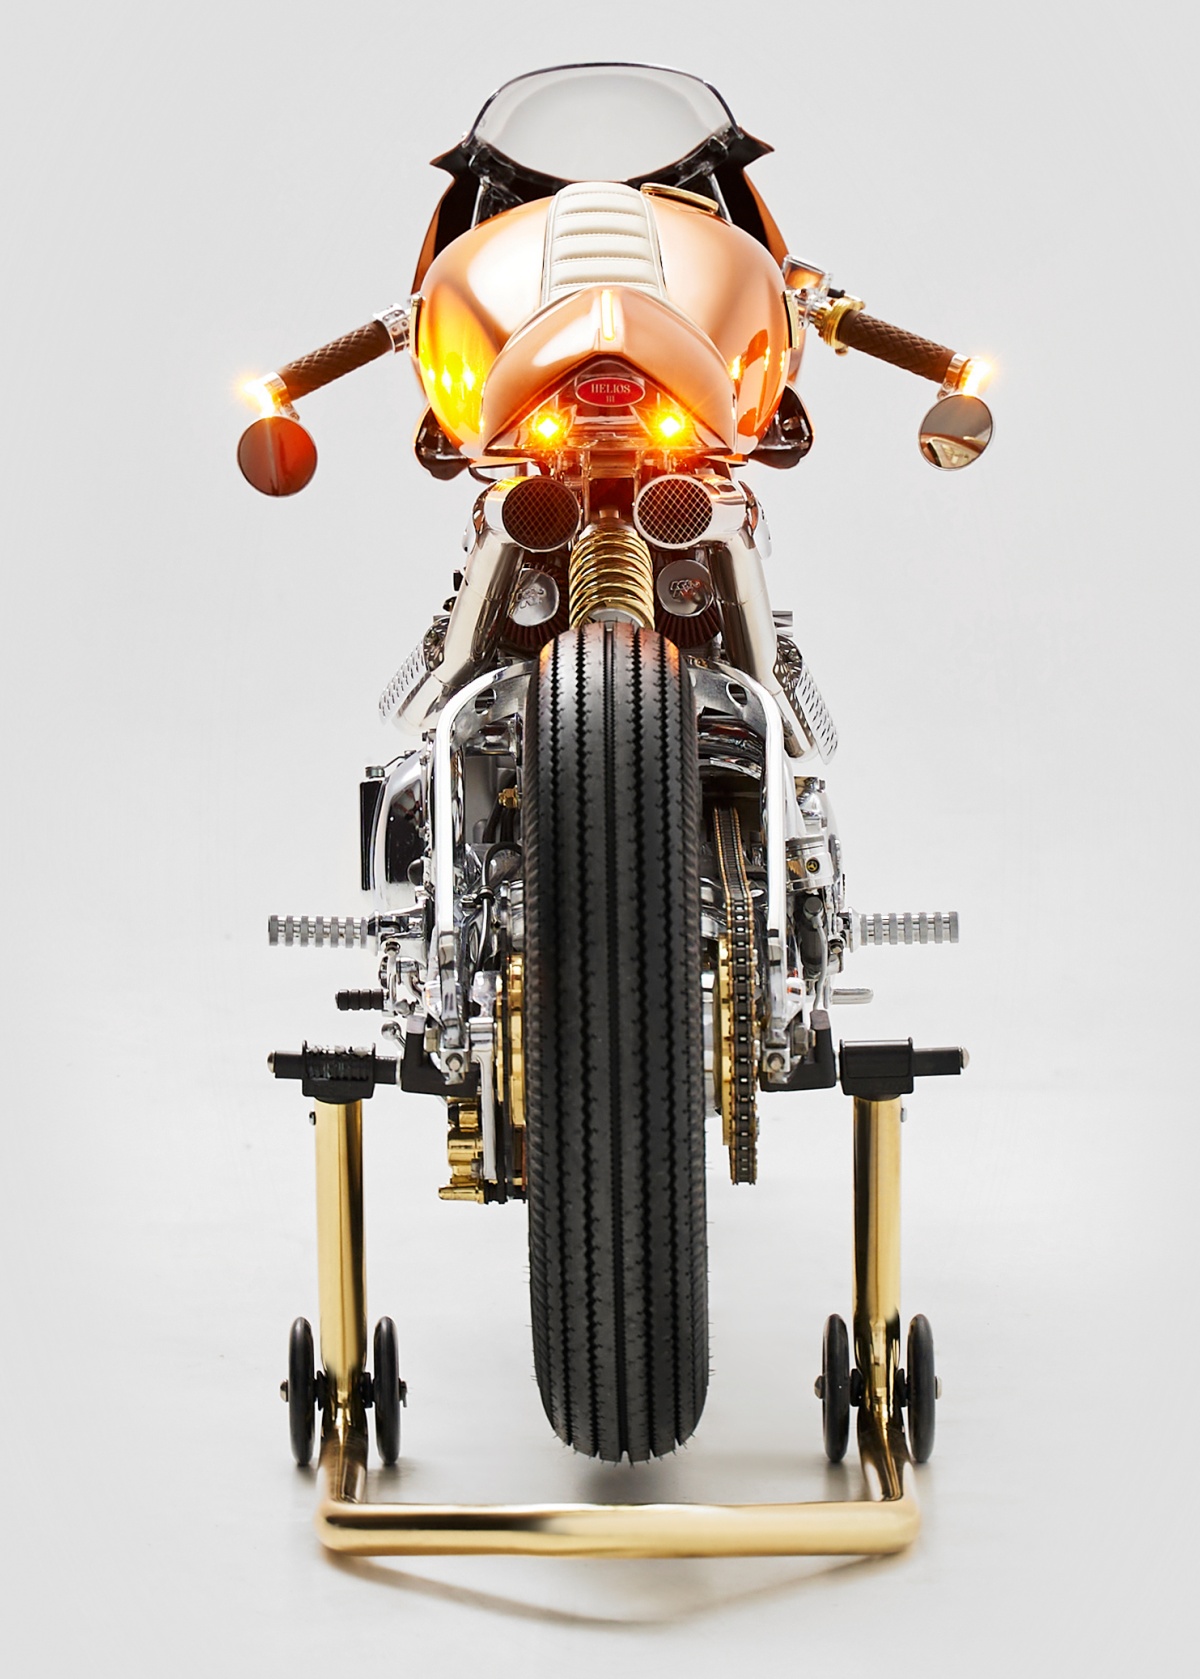 Desde Alicante, Tamarit Motorcycles realiza auténticas motos joya artesanales